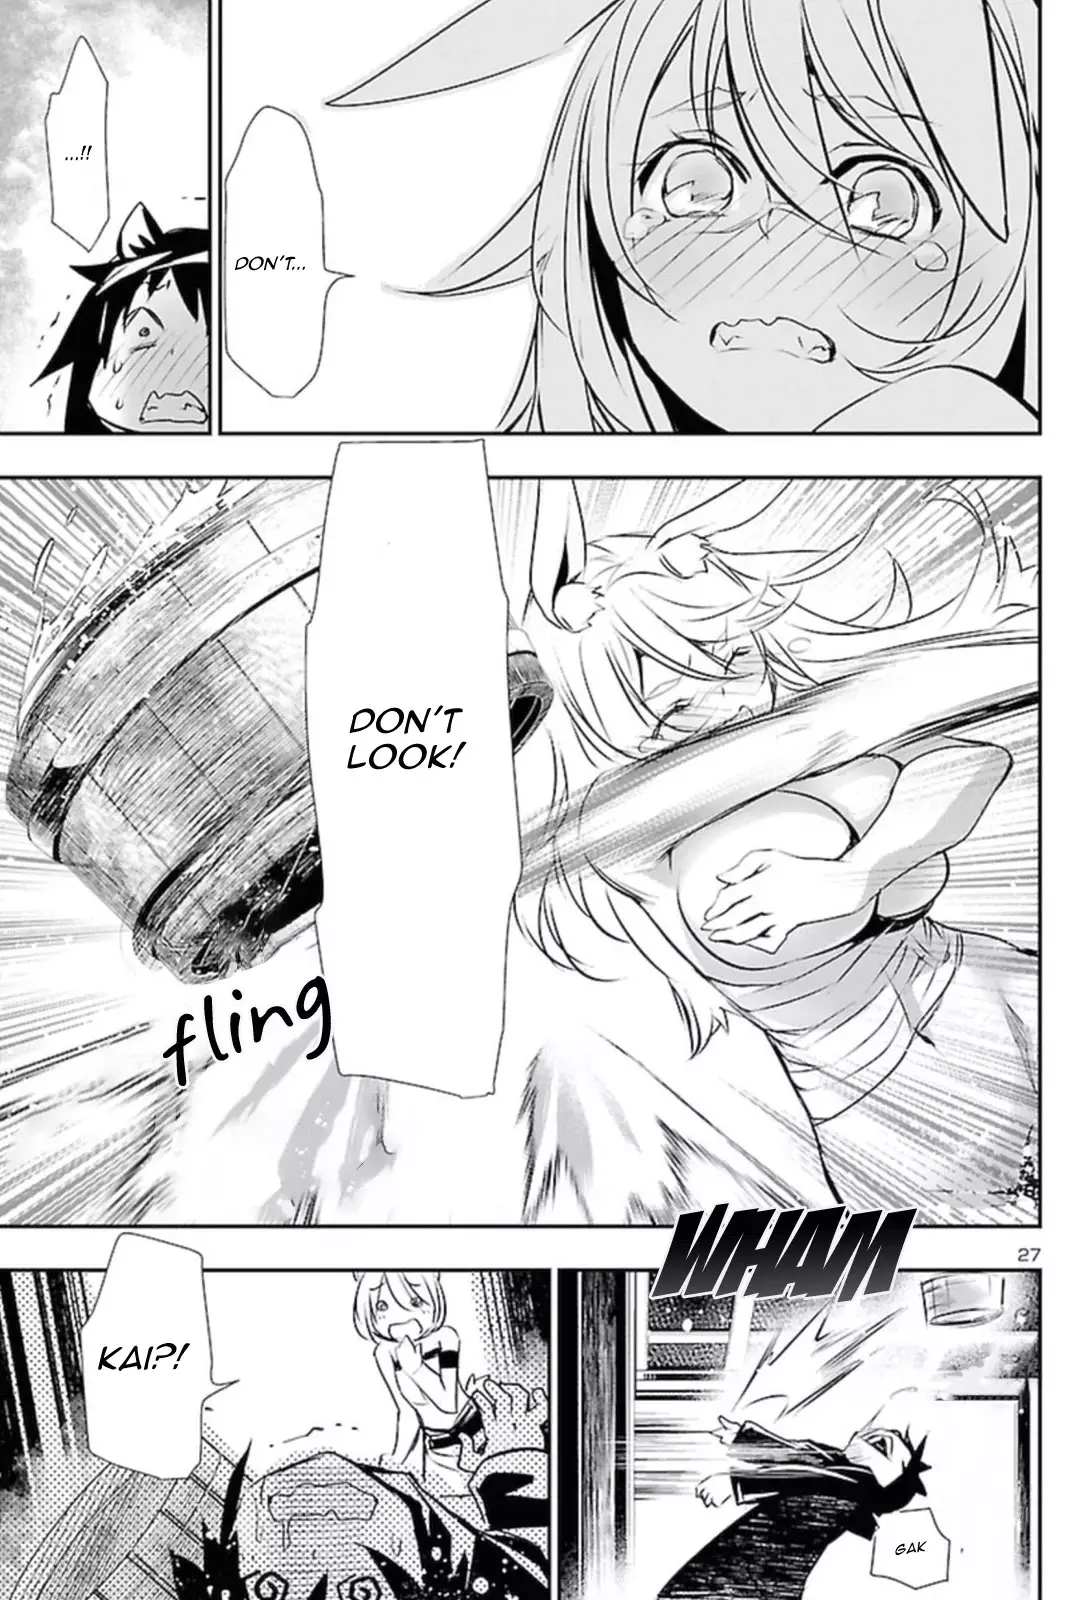 Shinju no Nectar - 54 page 26